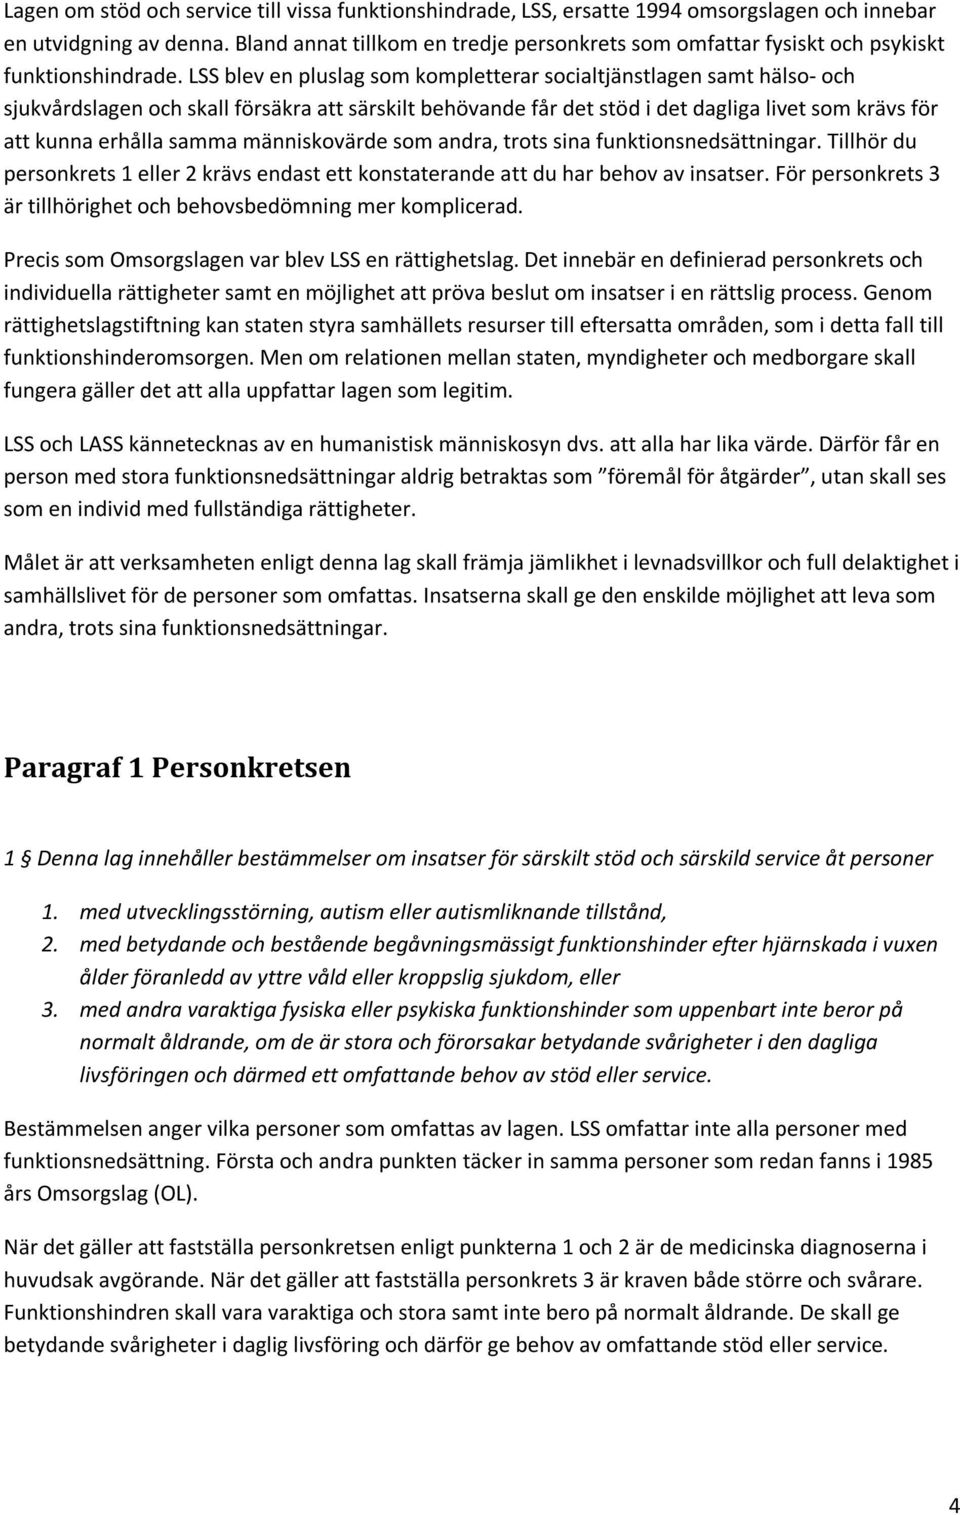 LSS Skolan i HejaOlika. Samlad artikelserie av Harald Strand - PDF ...